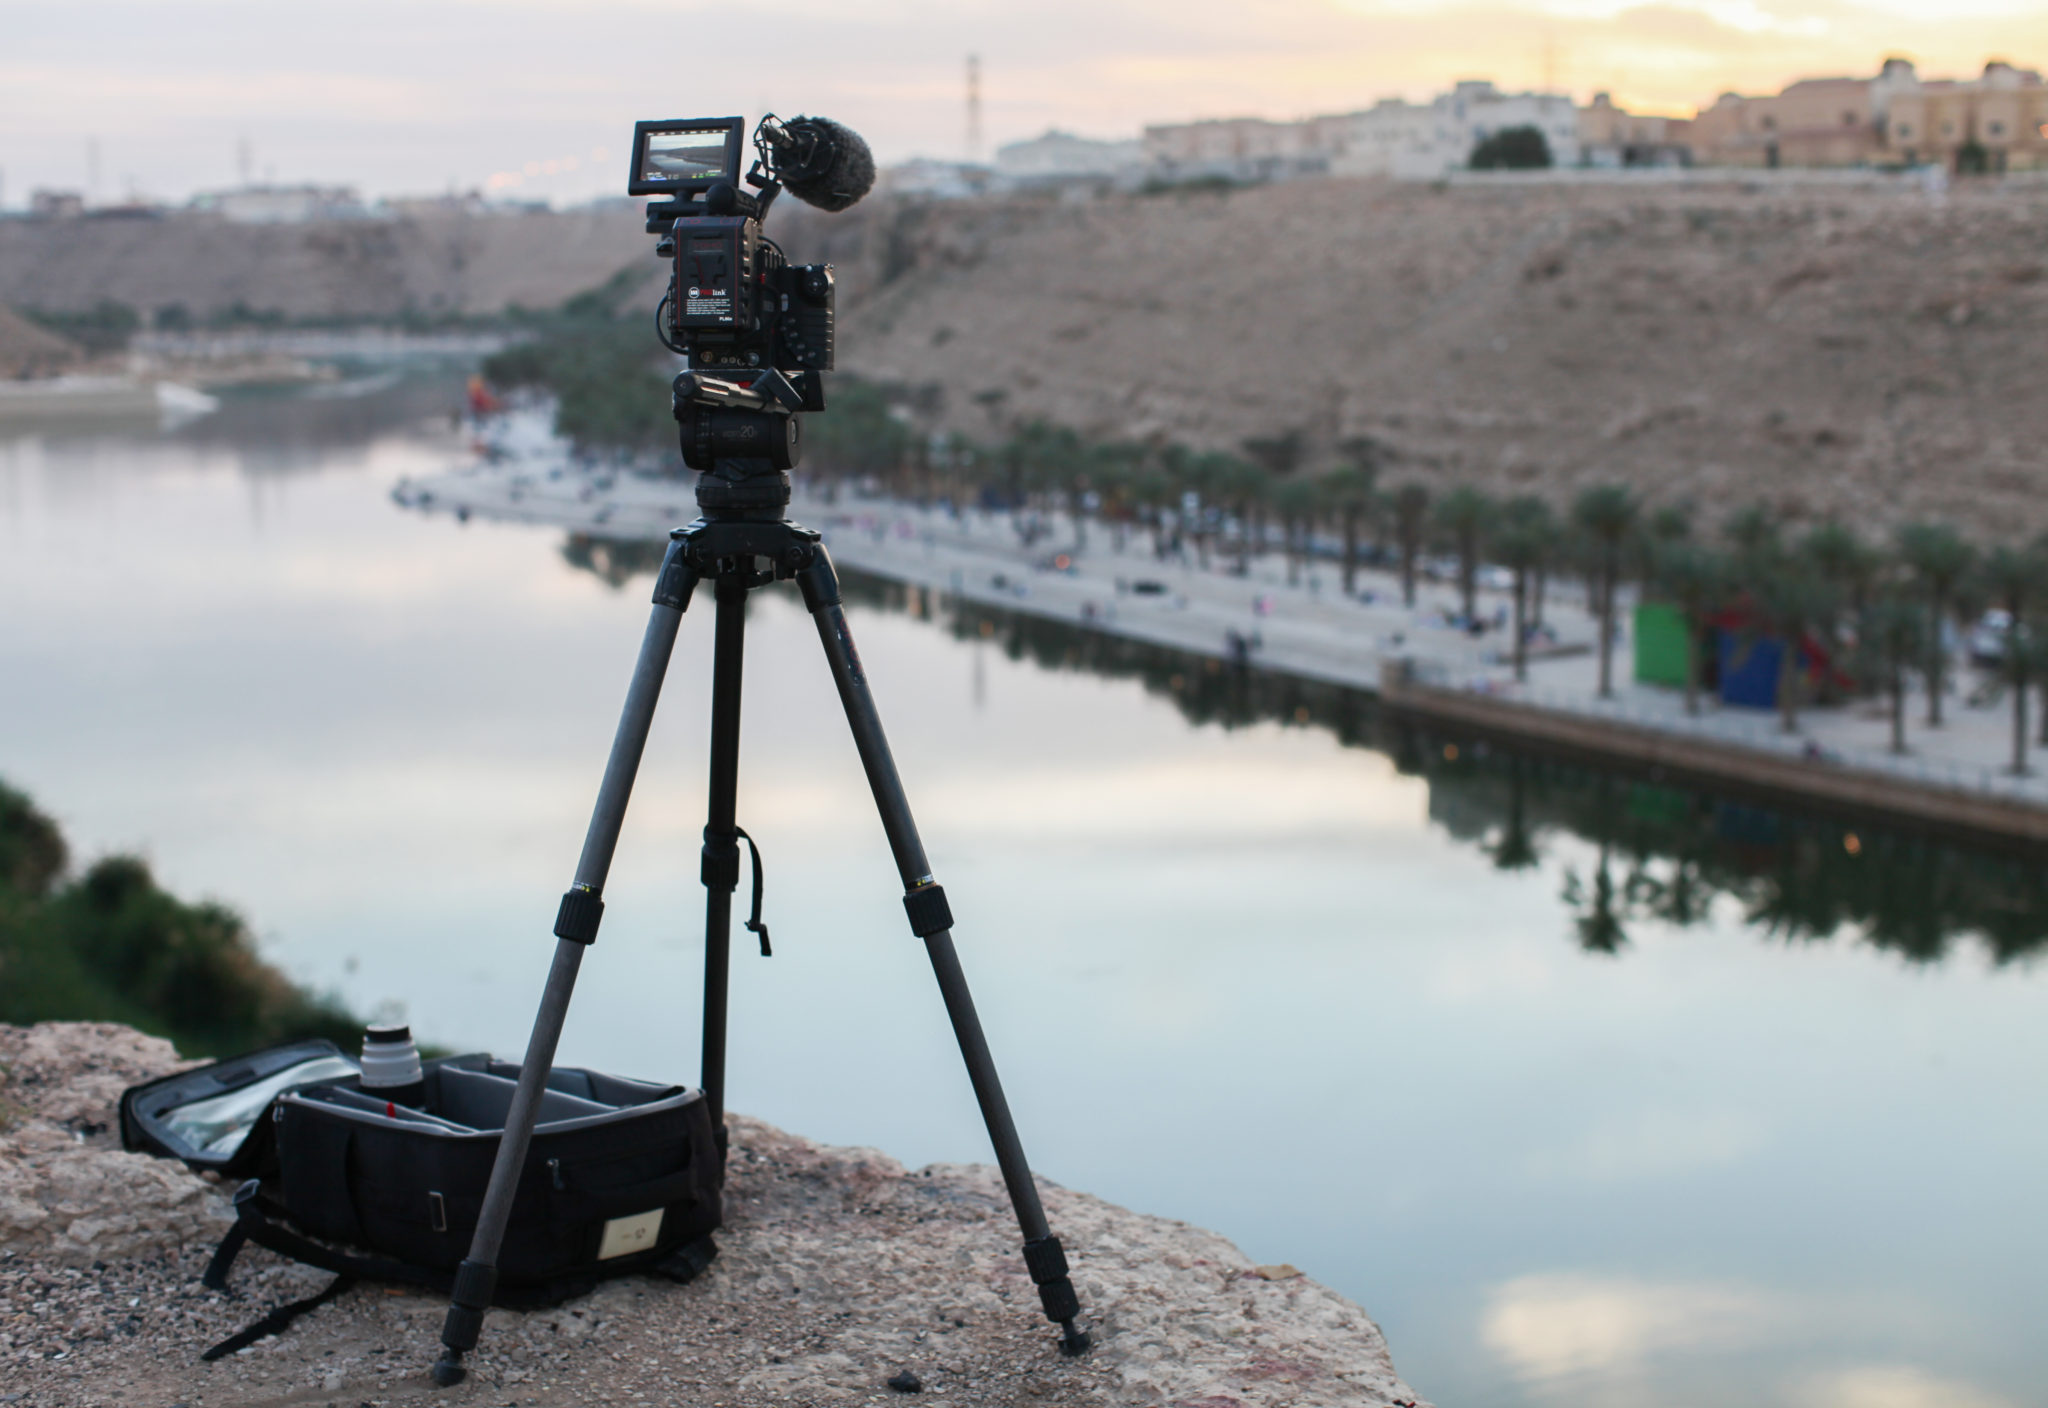 Yoho Media; Filming at Wadi Namar in Saudi Arabia